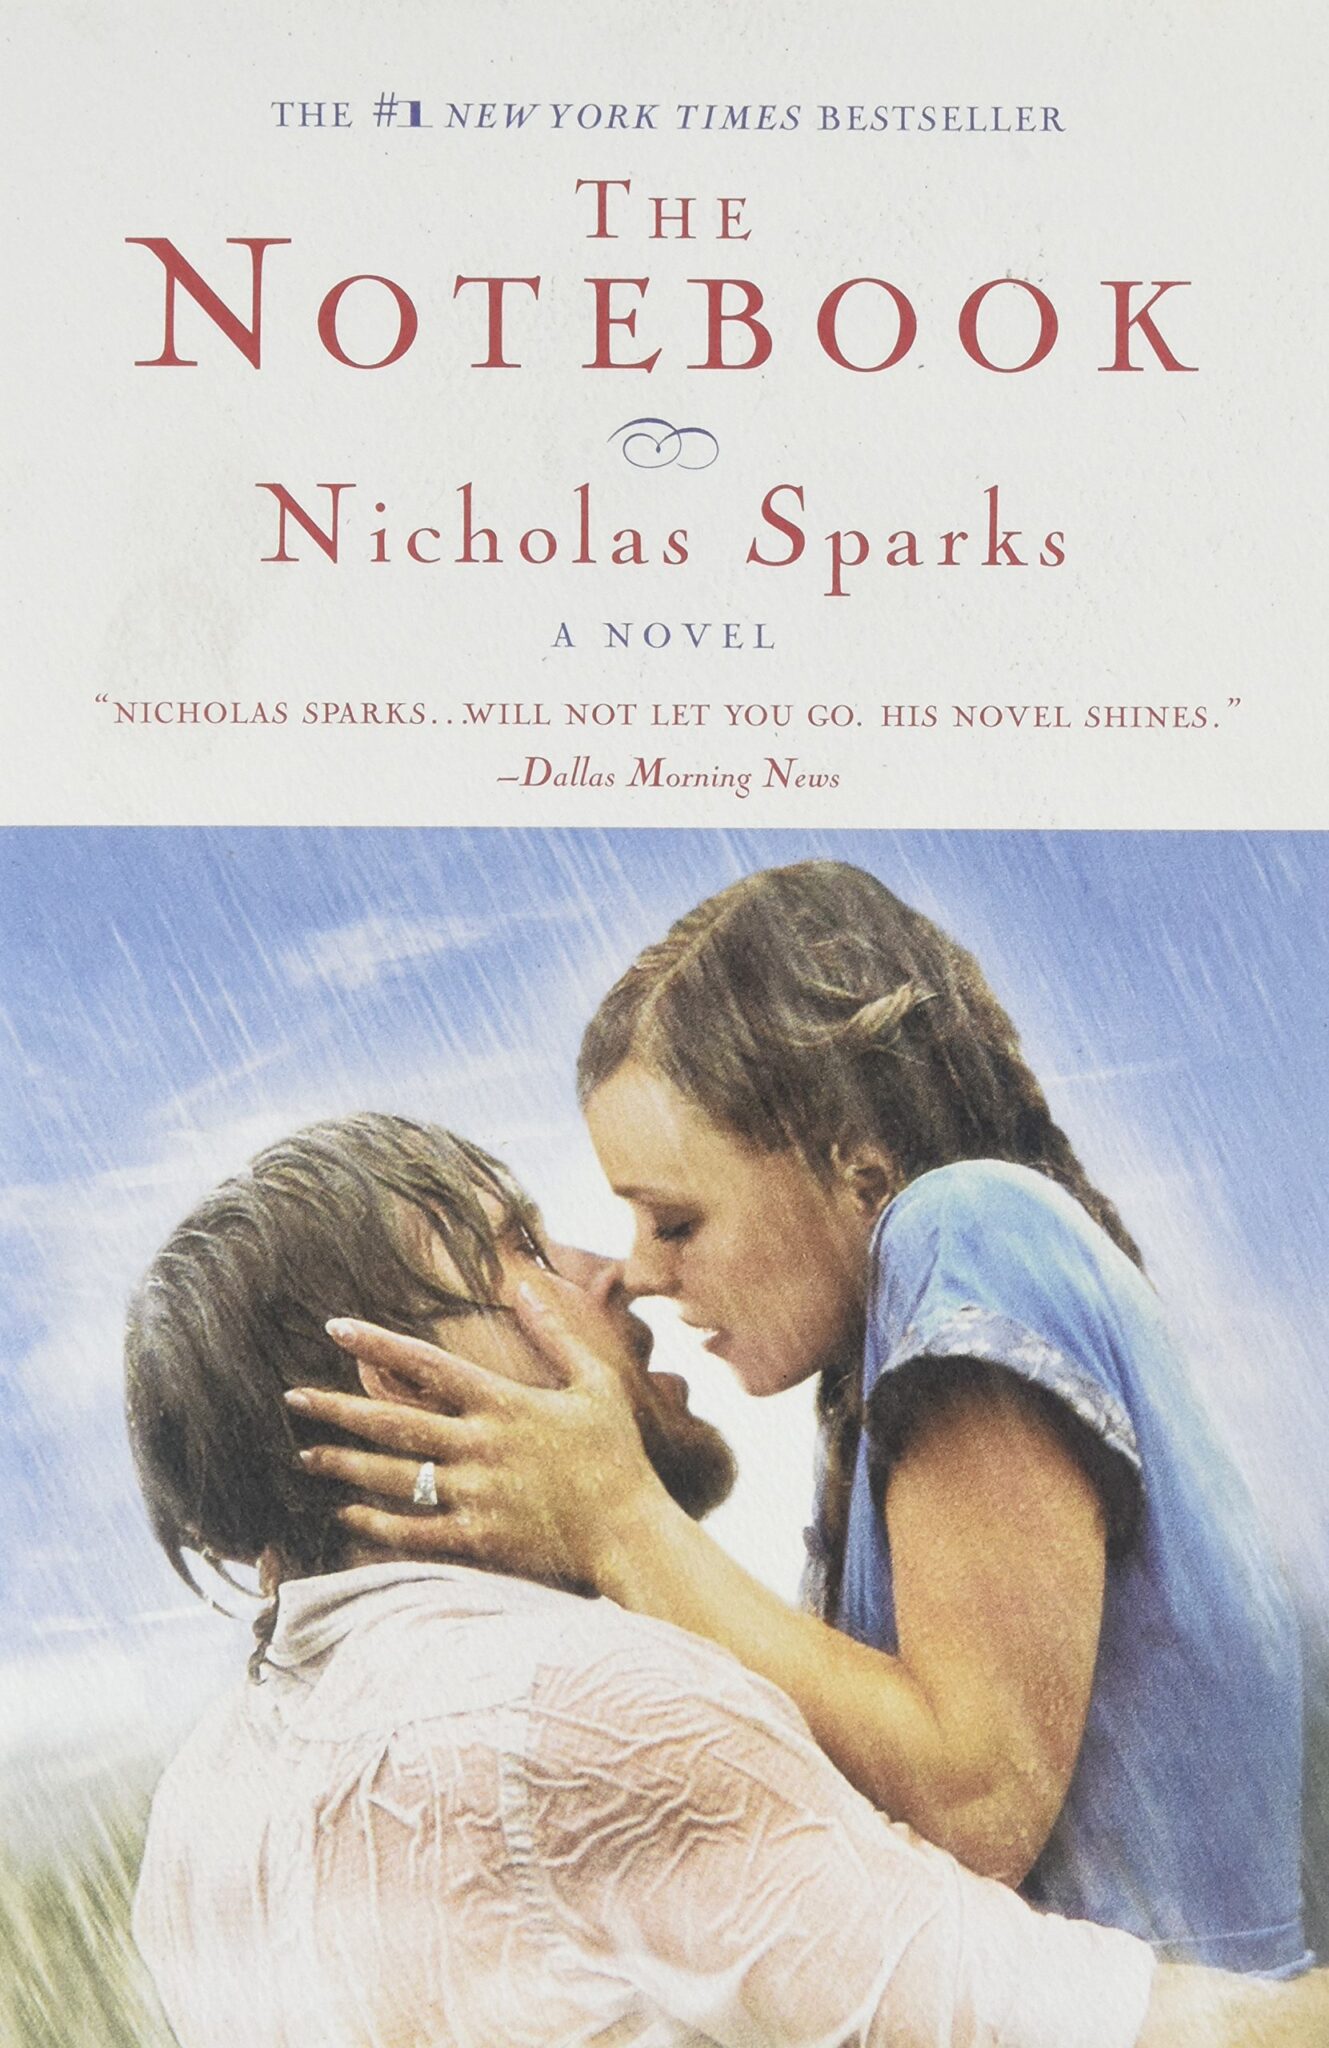 Nicholas Sparks livres 2